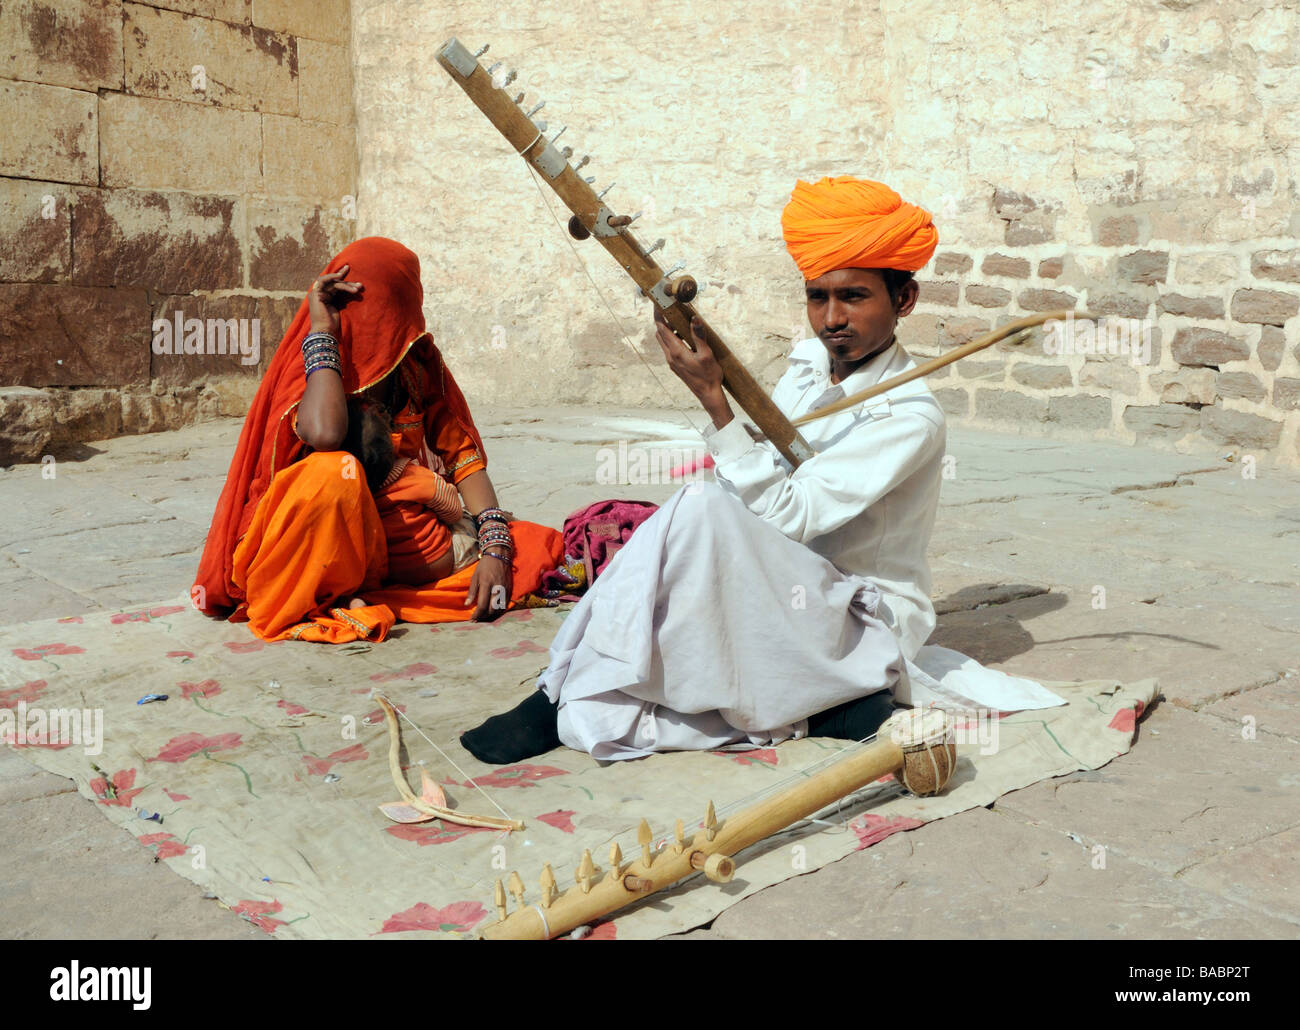 Un musicista in un turban arancione riproduce una chitarra in un cortile di Meherangarh, Foto Stock